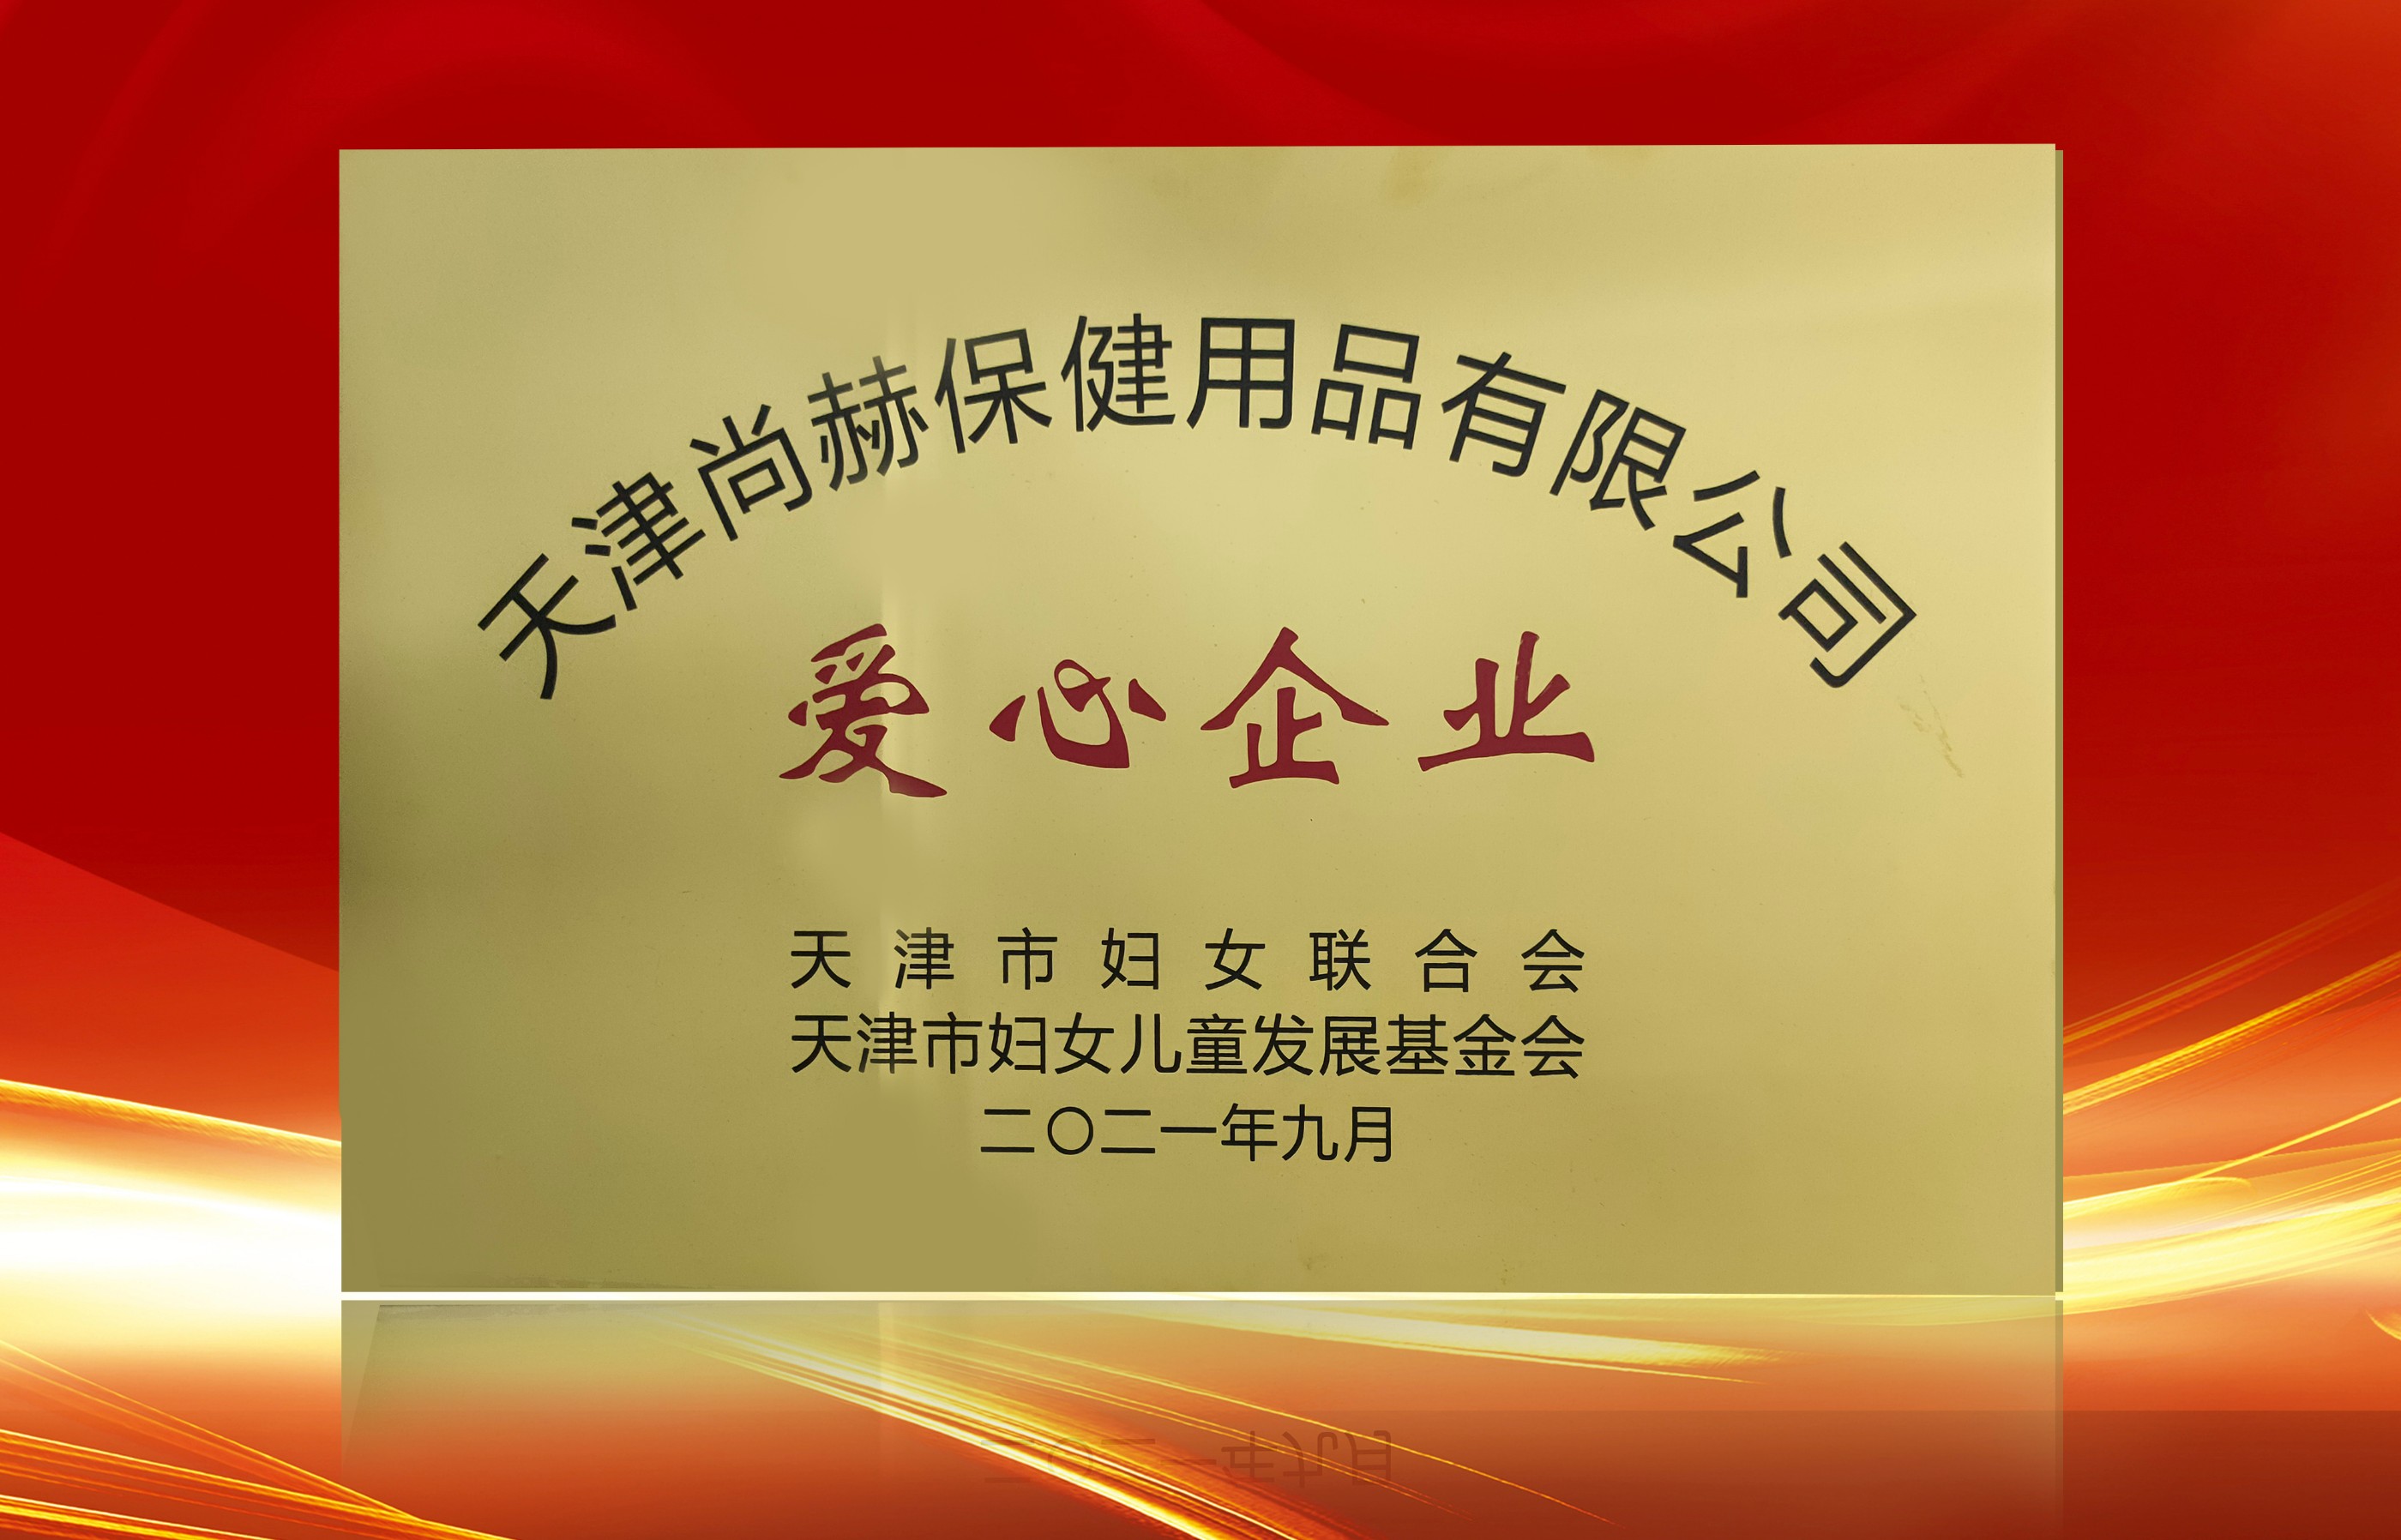 2021年9月-尊龙体育国际(中国)科技有限公司荣获-天津市妇女联合会-“爱心企业”称号